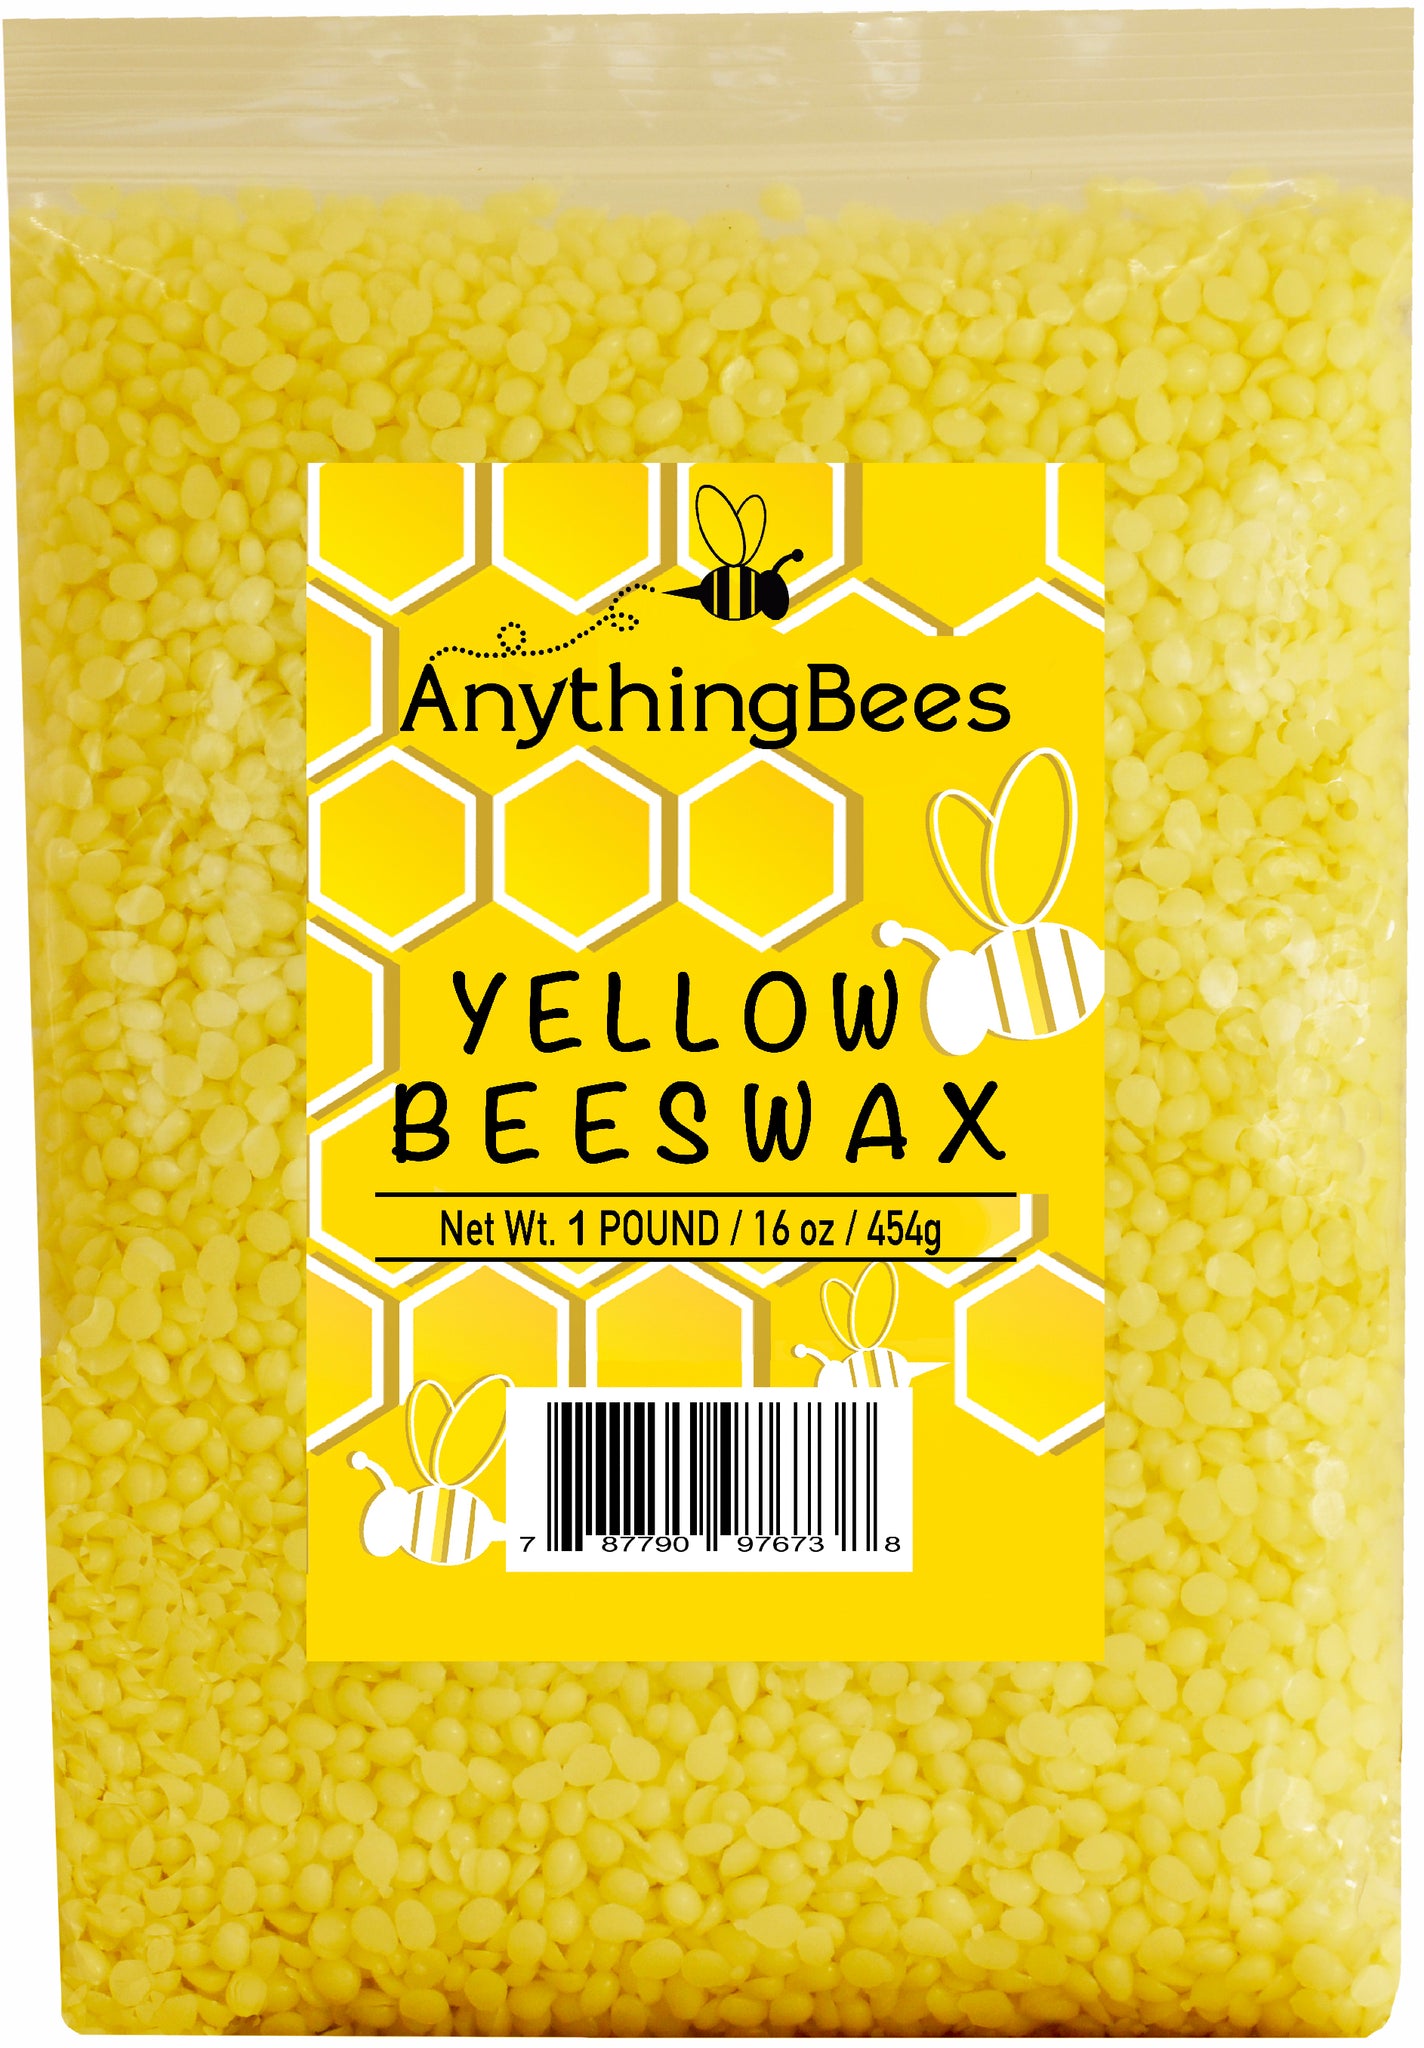 CARGEN Yellow Beeswax Pellets 900g - Beeswax Pastilles Pure Bulk